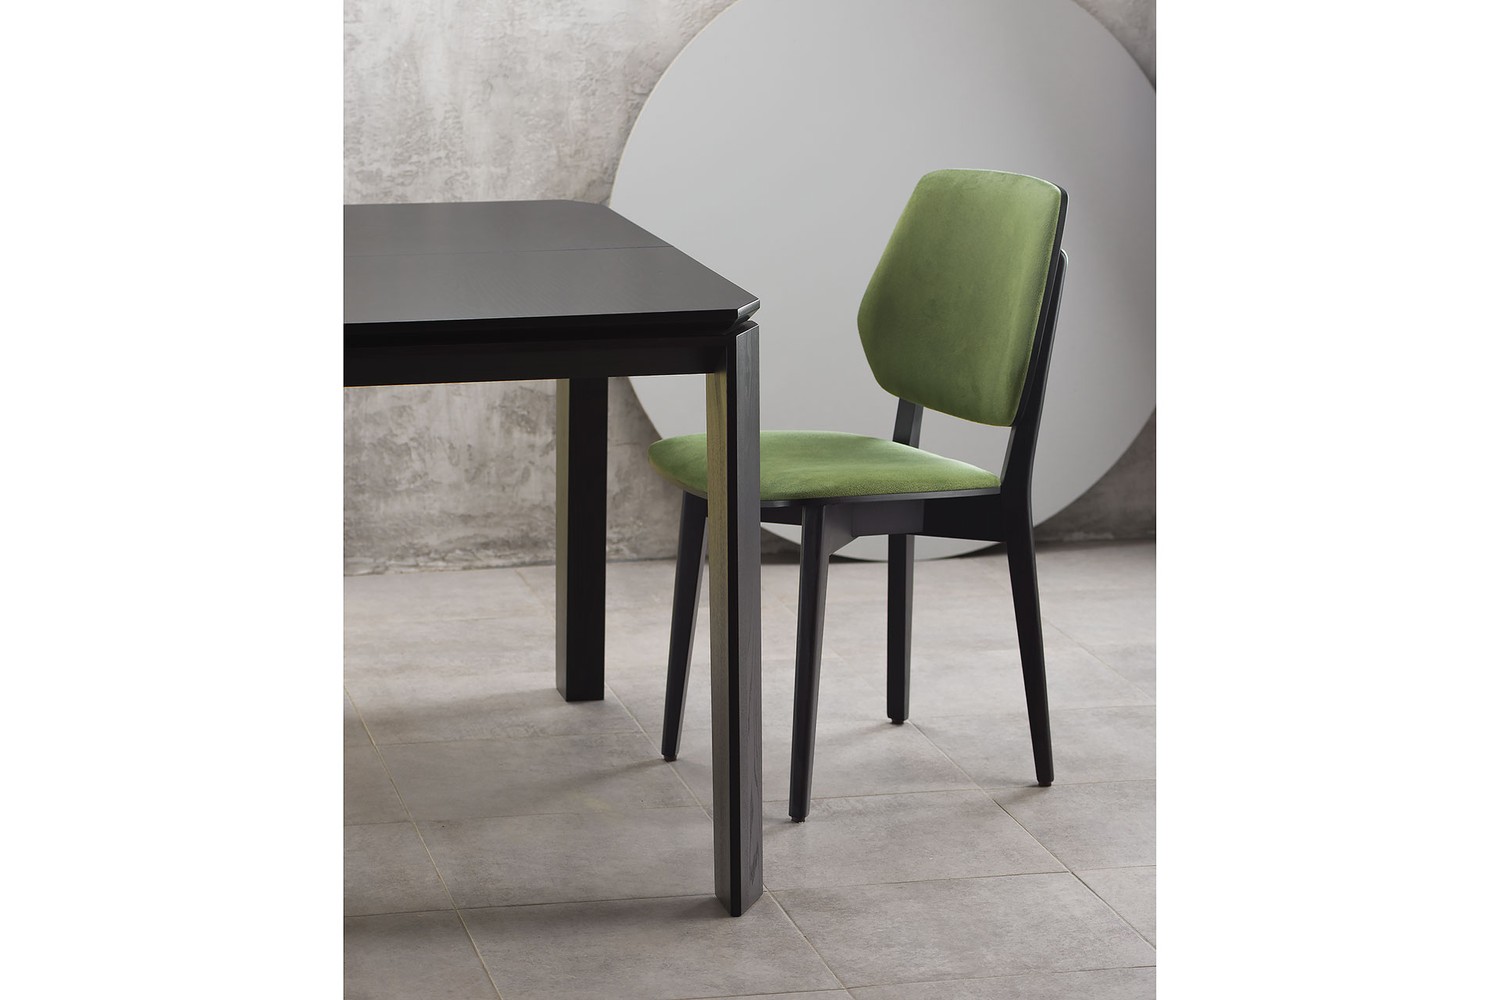 Обеденный комплект: стол Варгас обновленный и стулья 03В 14-29 фото